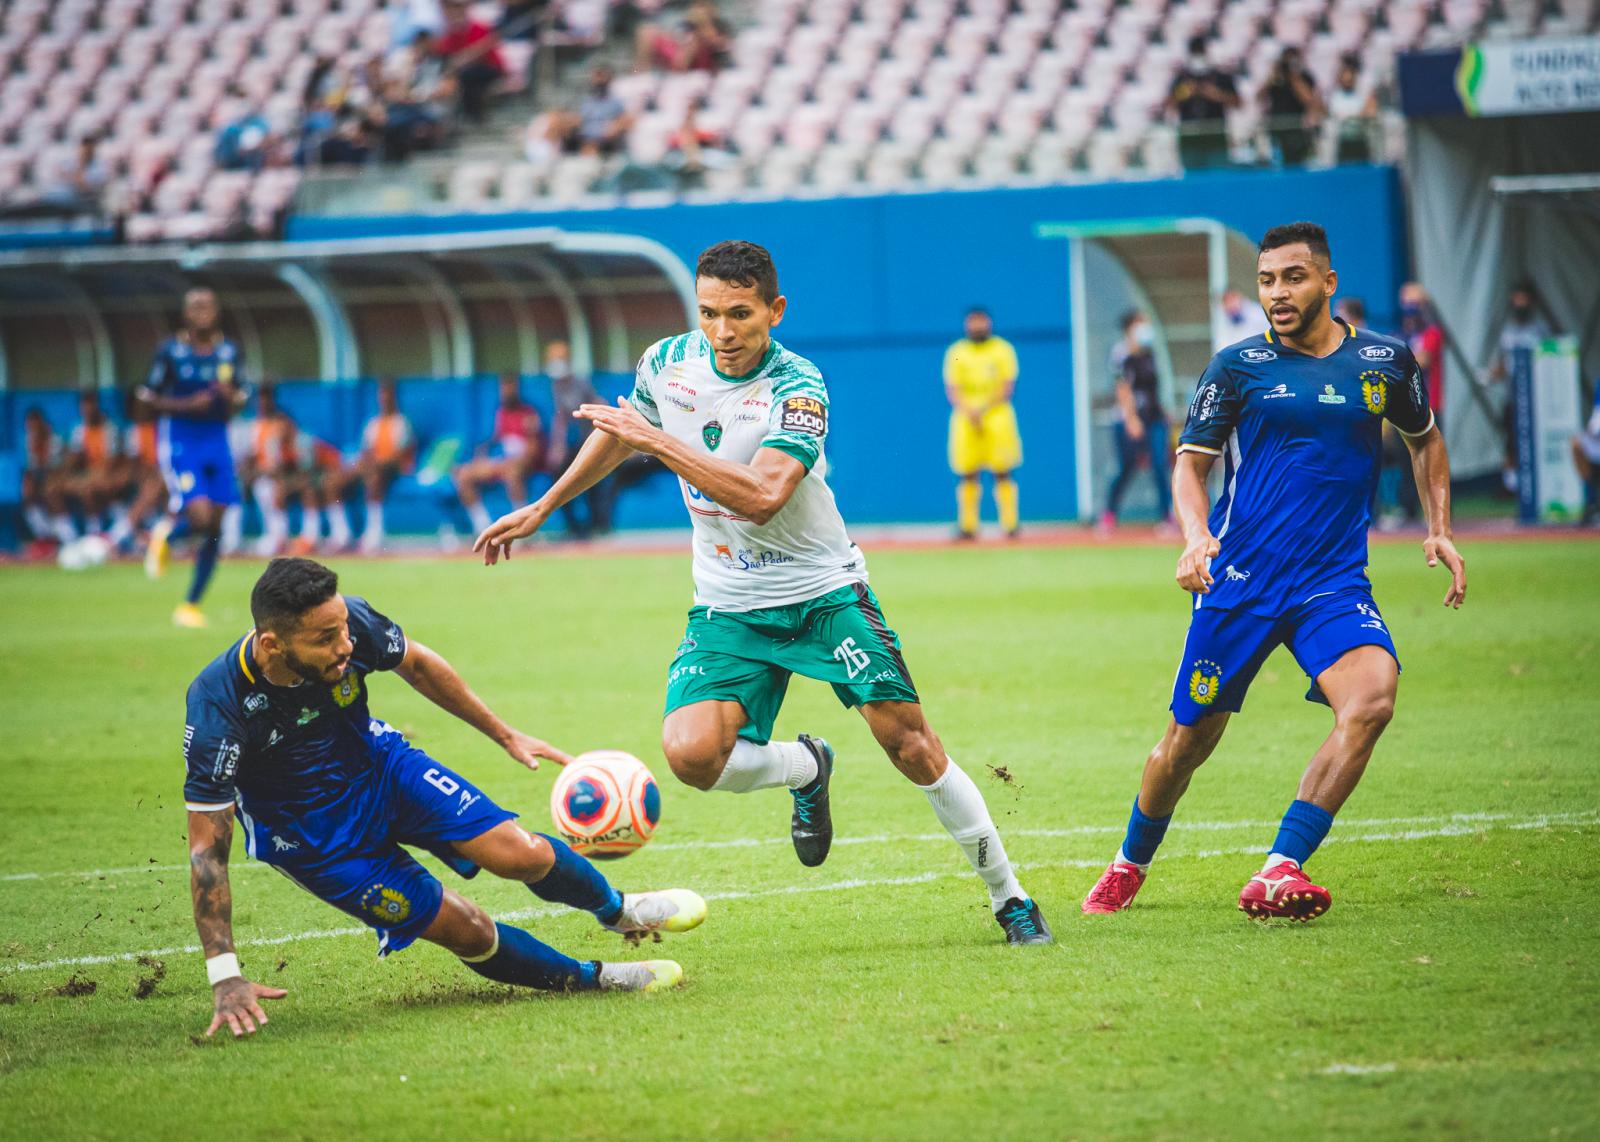 Serviço de jogo | Manaus vs Nacional | quinta rodada Barezão 2022